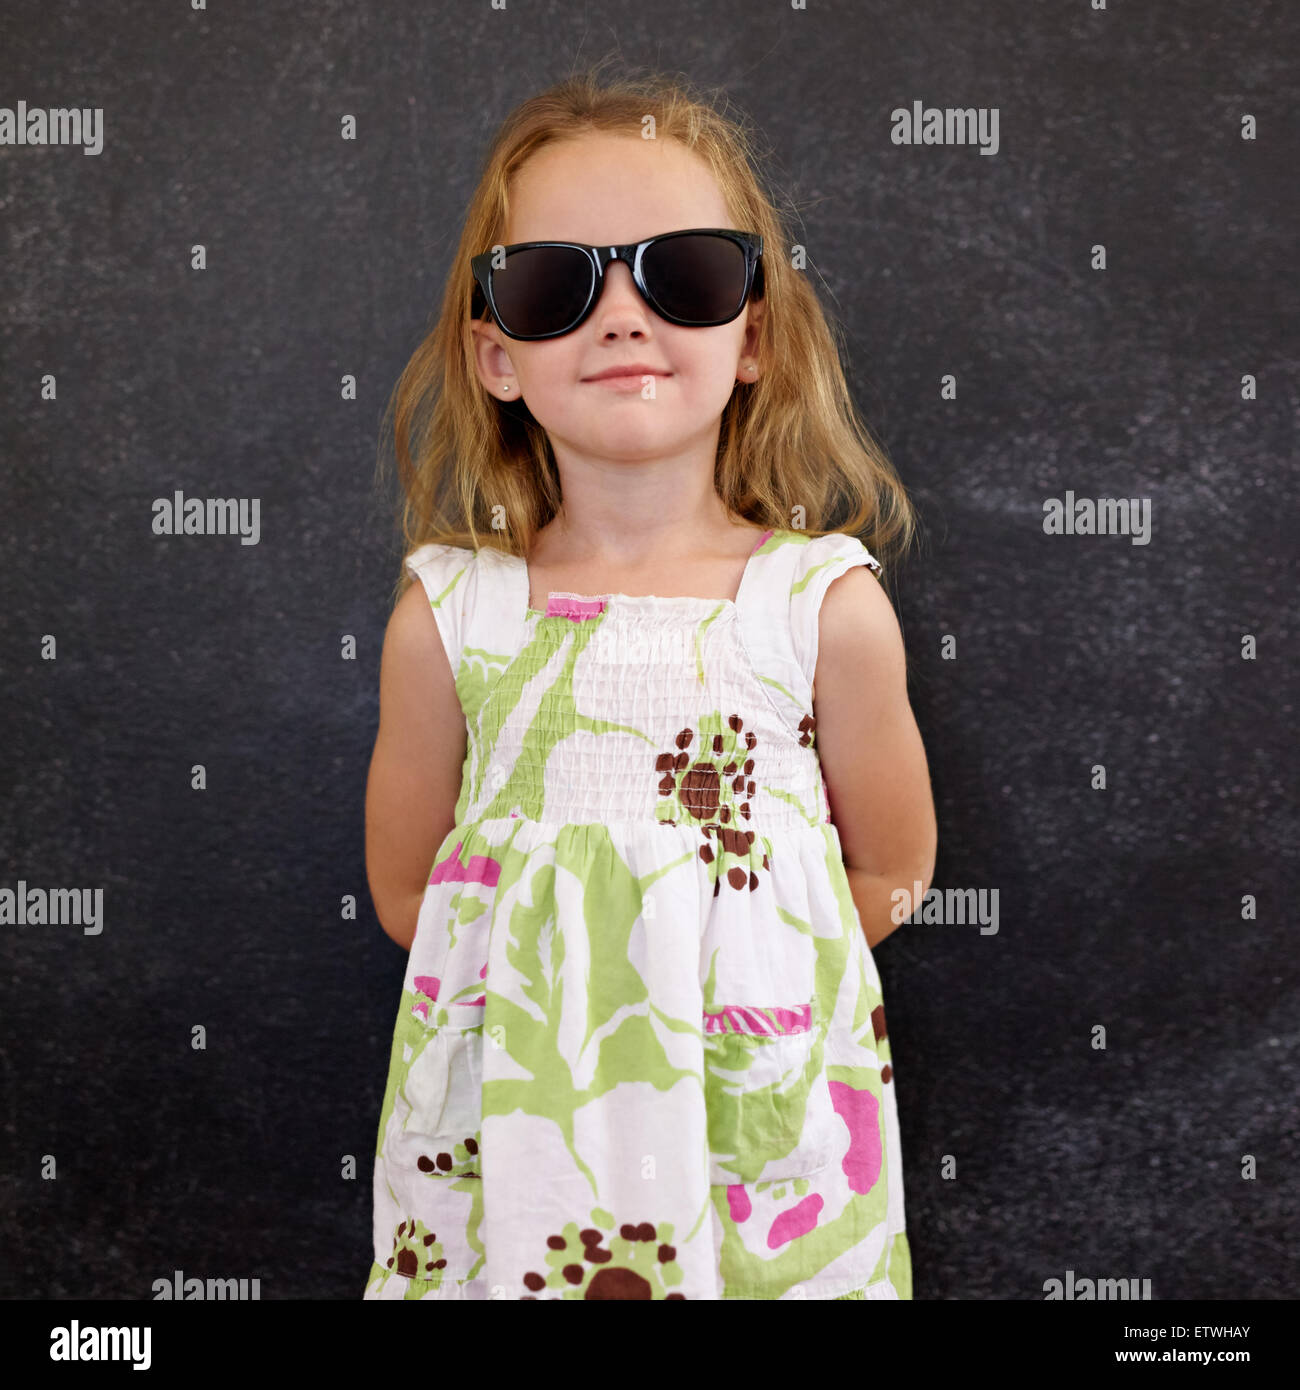 Porträt von schönen Mädchen mit Sonnenbrille posiert auf Kamera gegen eine schwarze Wand. Stockfoto